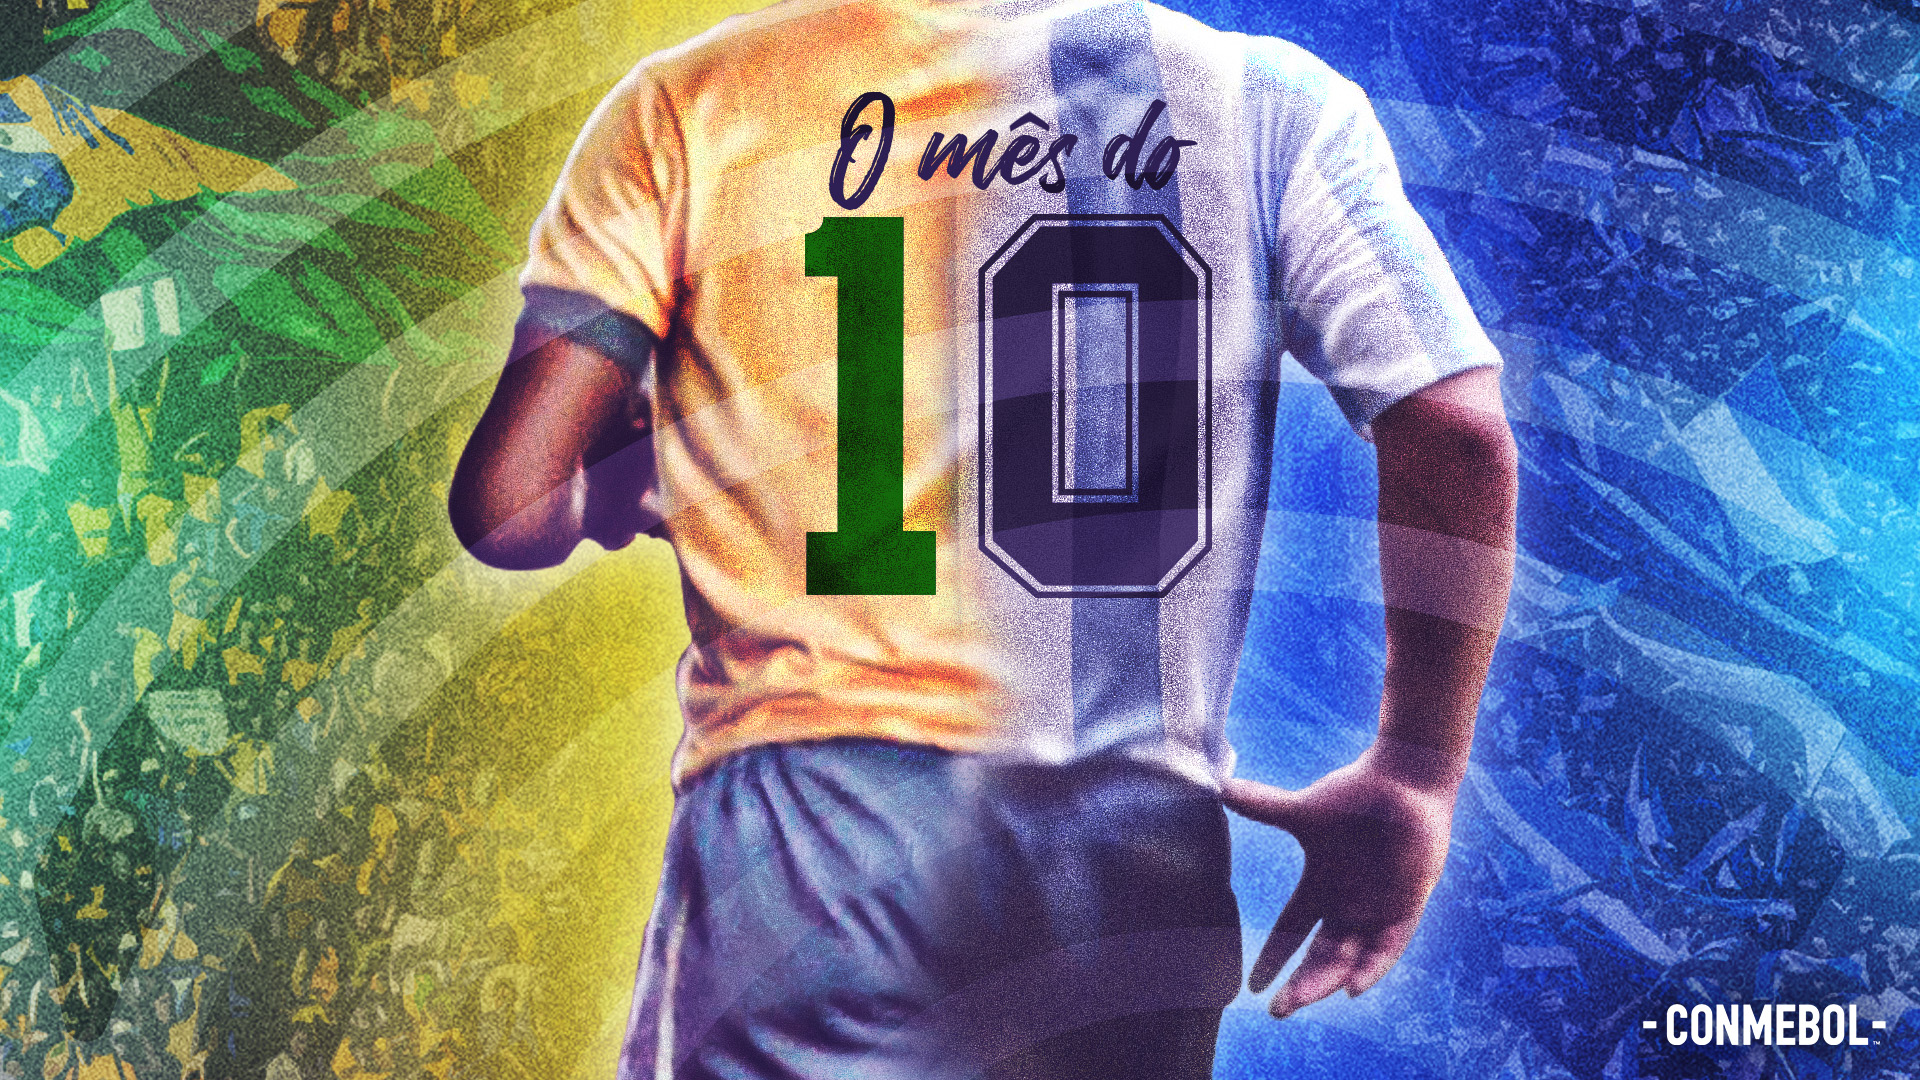 Outubro, mês do 10' em homenagem a Pelé e Maradona - CONMEBOL